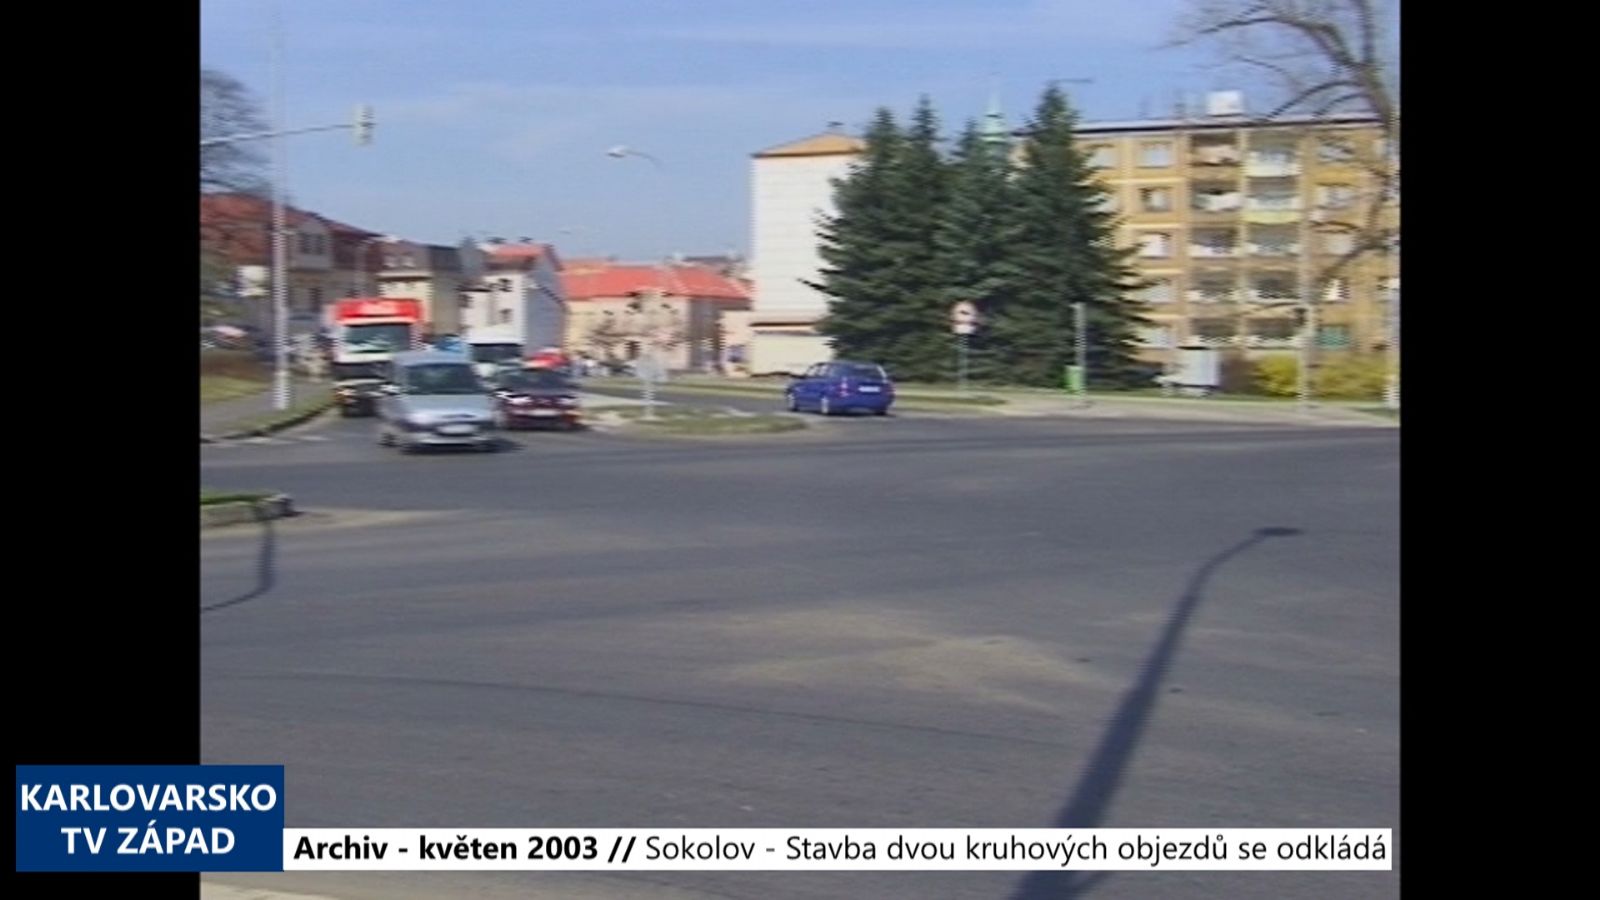 2003 – Sokolov: Stavba dvou kruhových objezdů se odkládá (TV Západ)